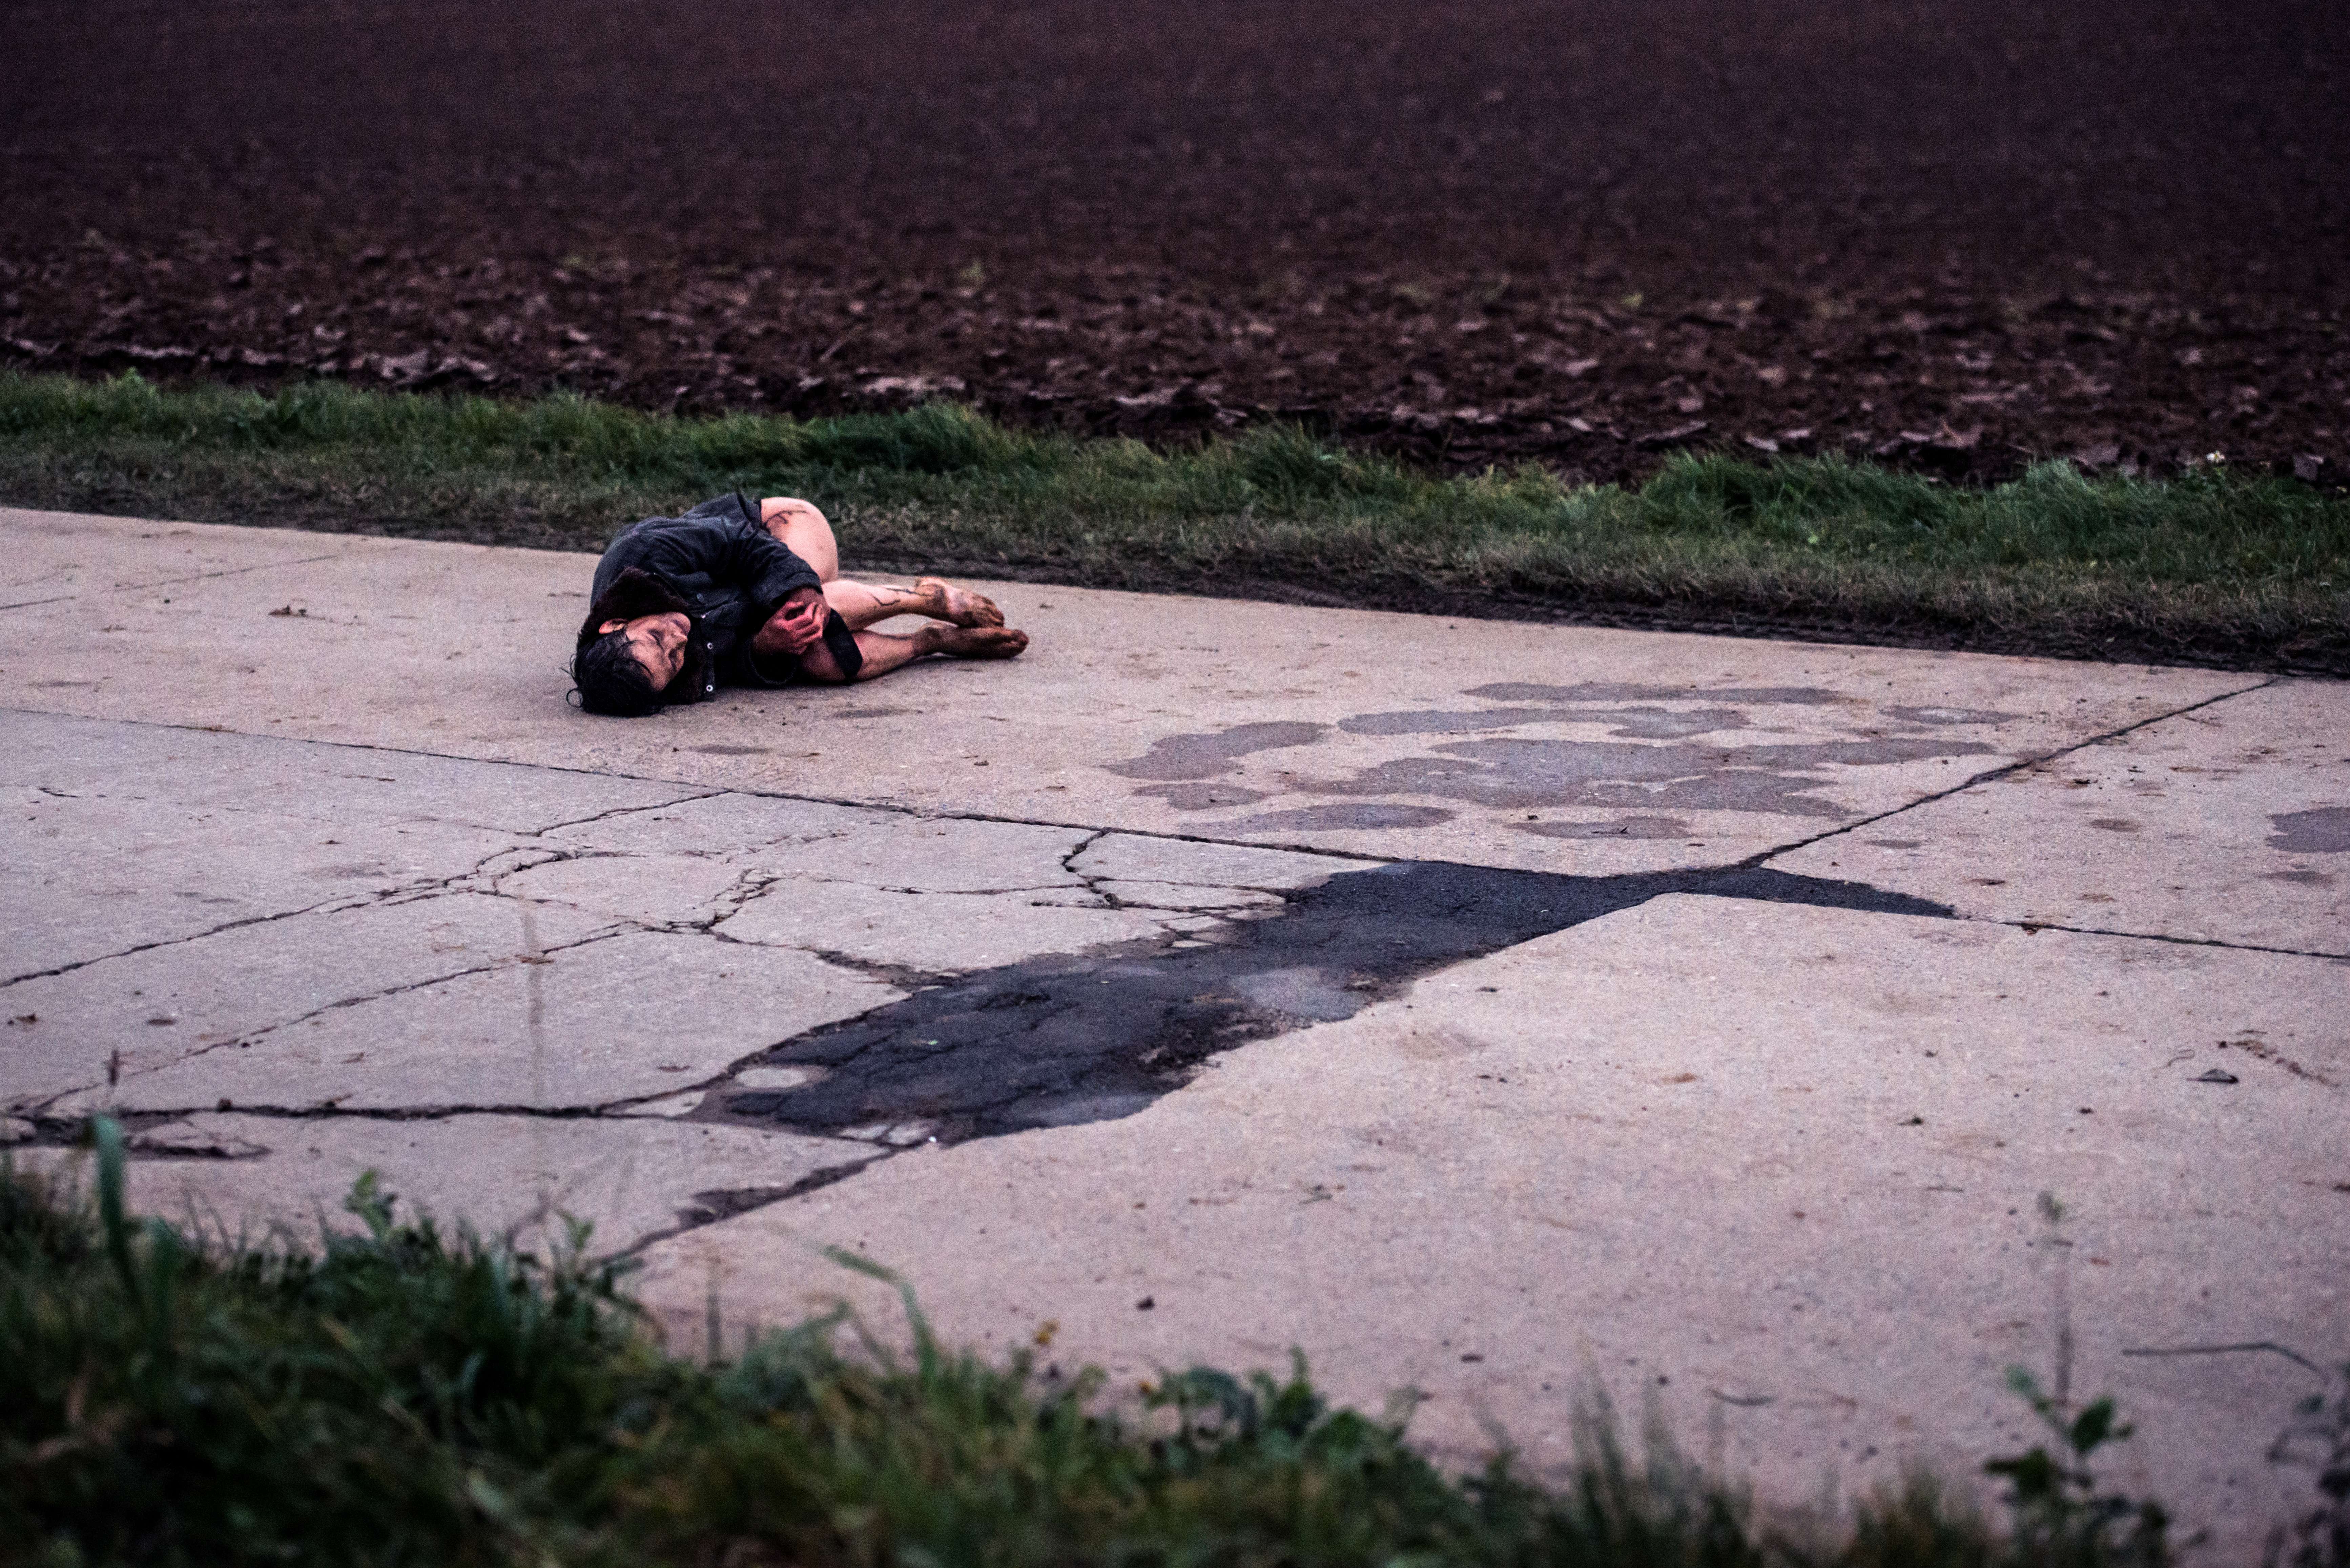 Un homme blessé et sans pantalon est recroquevillé sur un trottoir délabré, en pleine rue ; plan issu du film Megalomaniac.